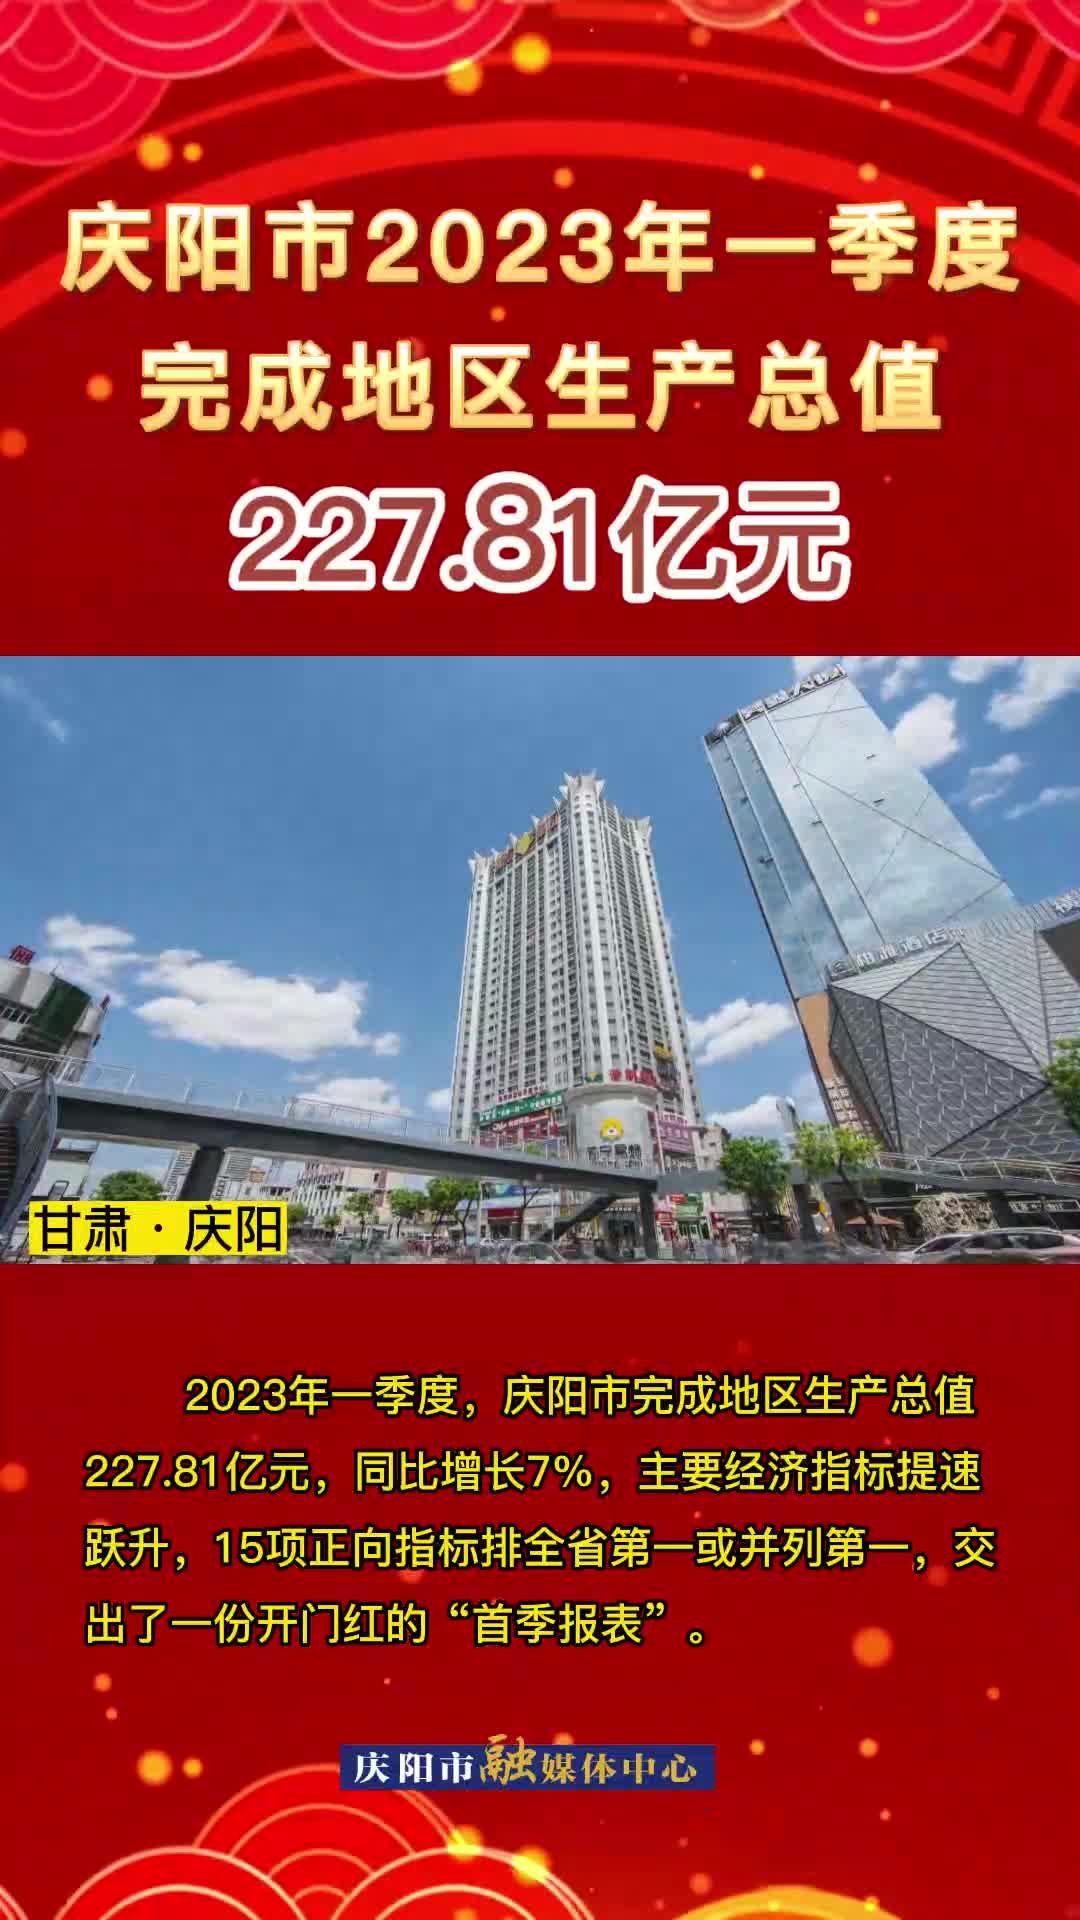 慶陽市2023年第一季度完成地區生產總值227.81億元